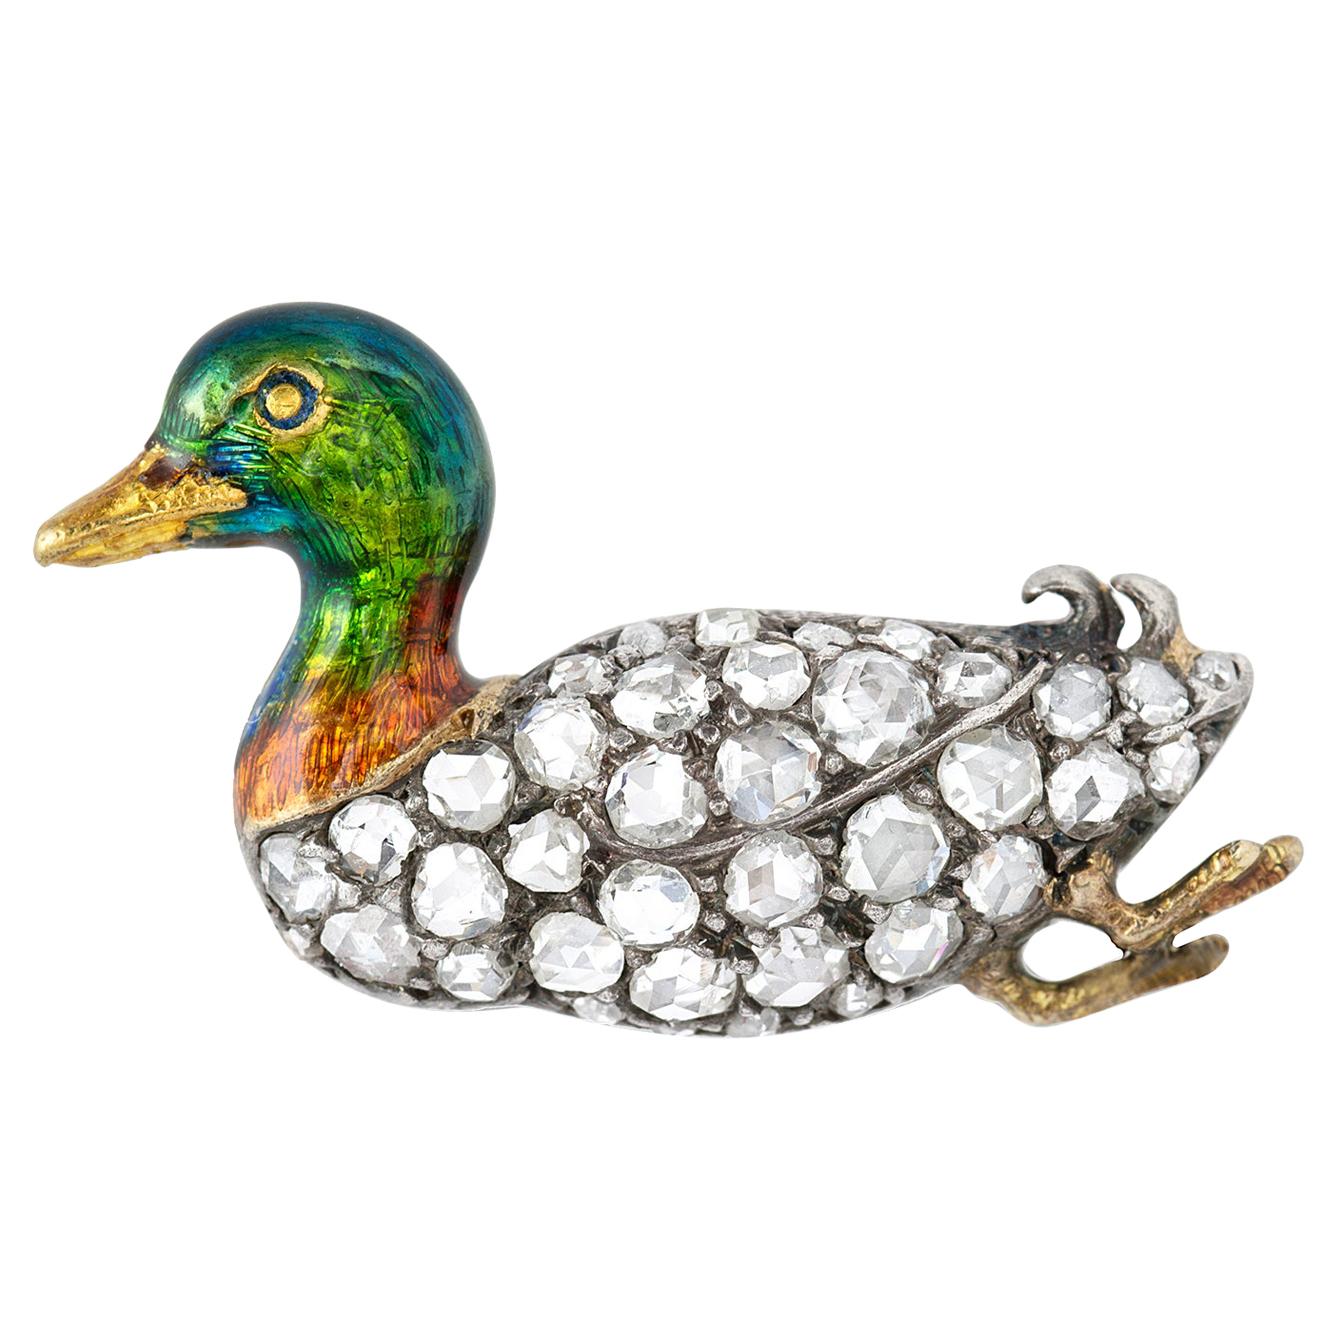 Little Black Duck brooch /pendant